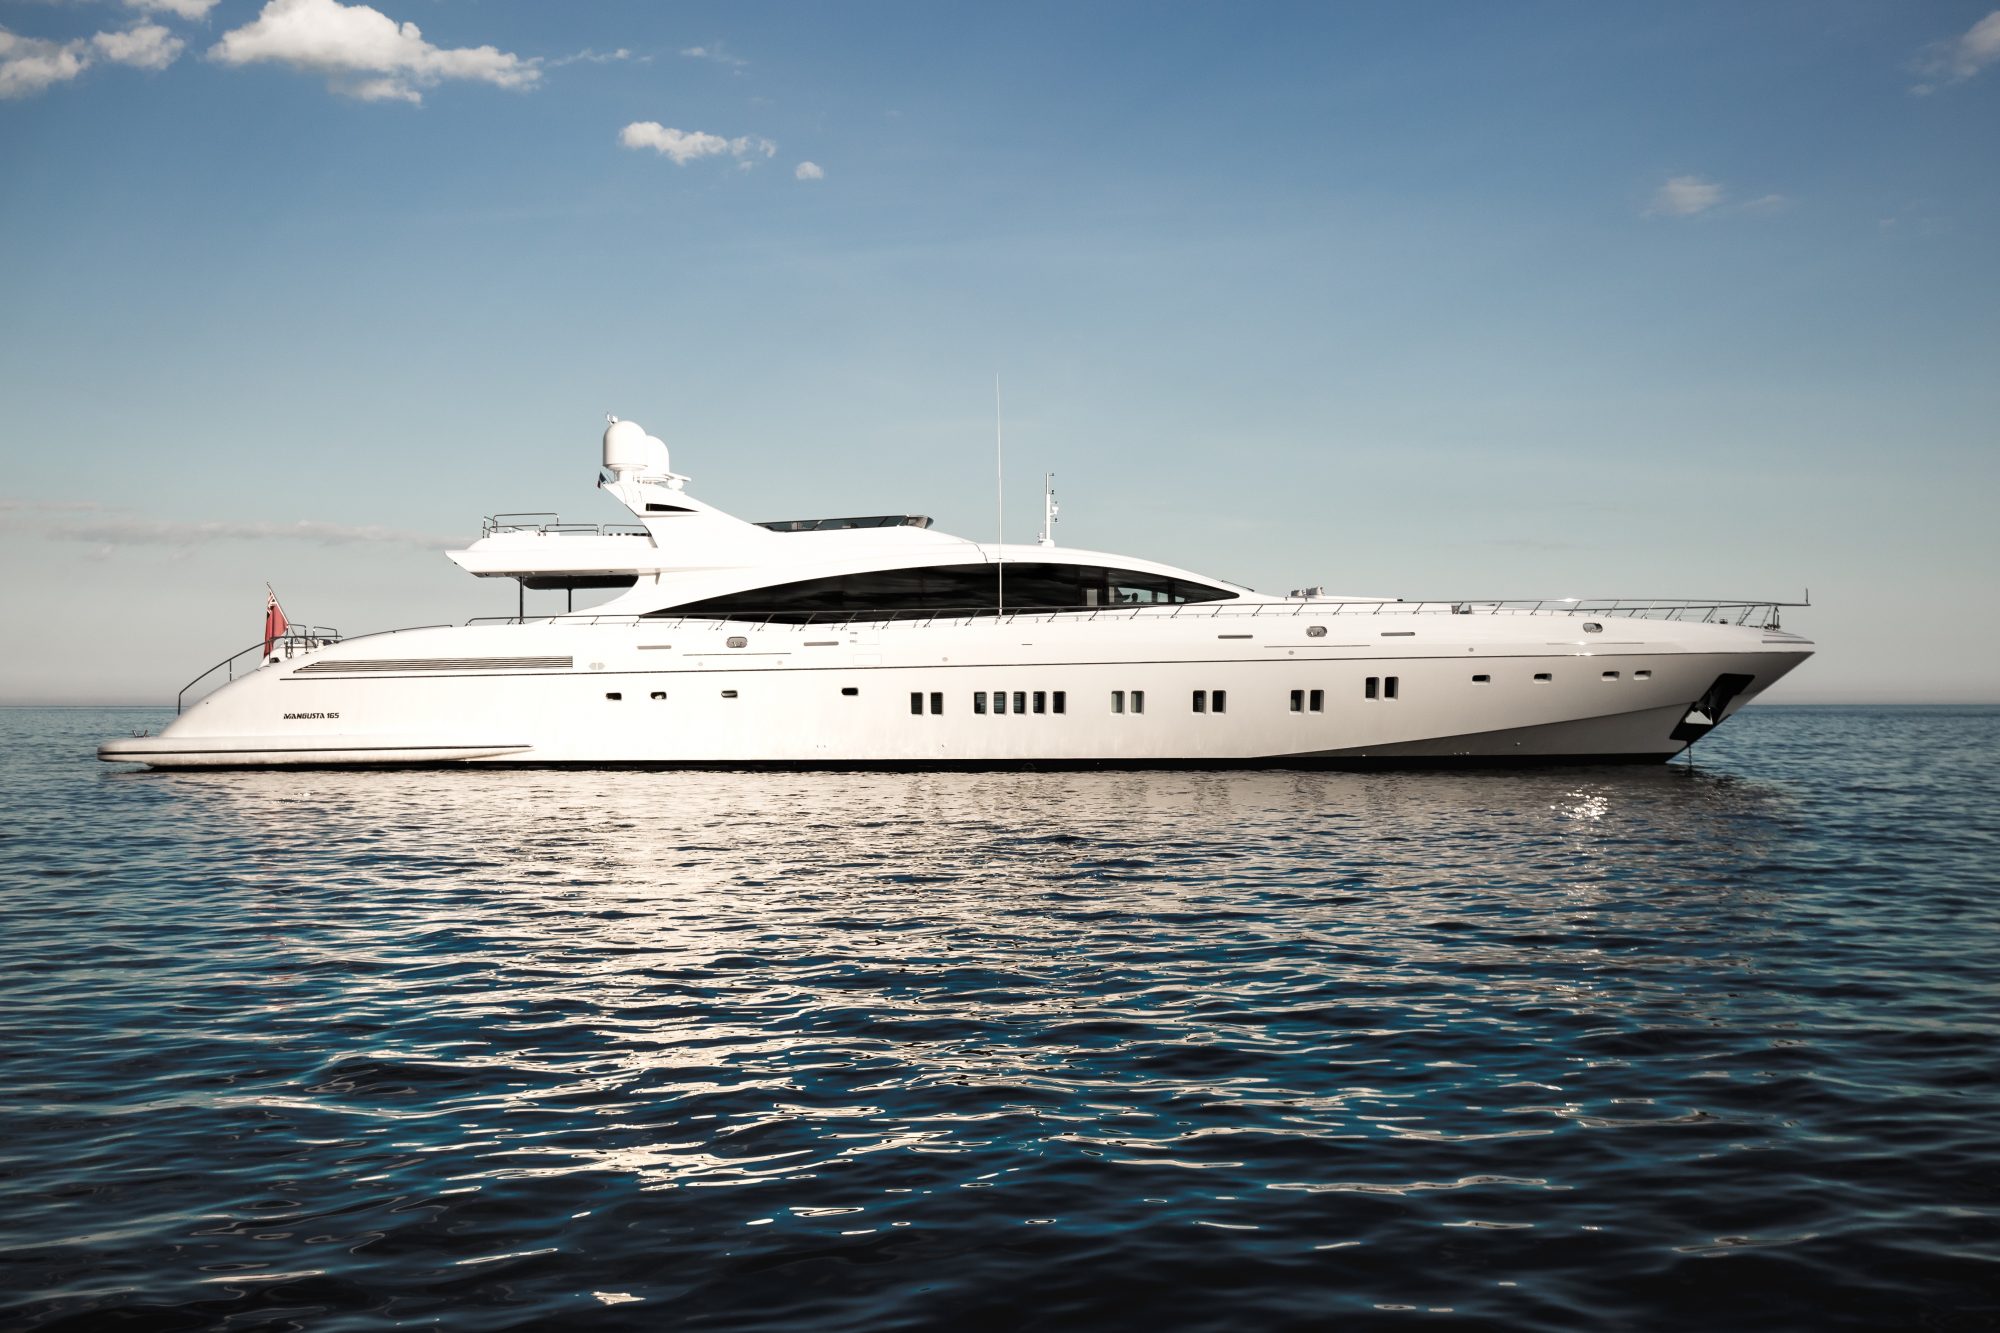 DA VINCI yacht for charter